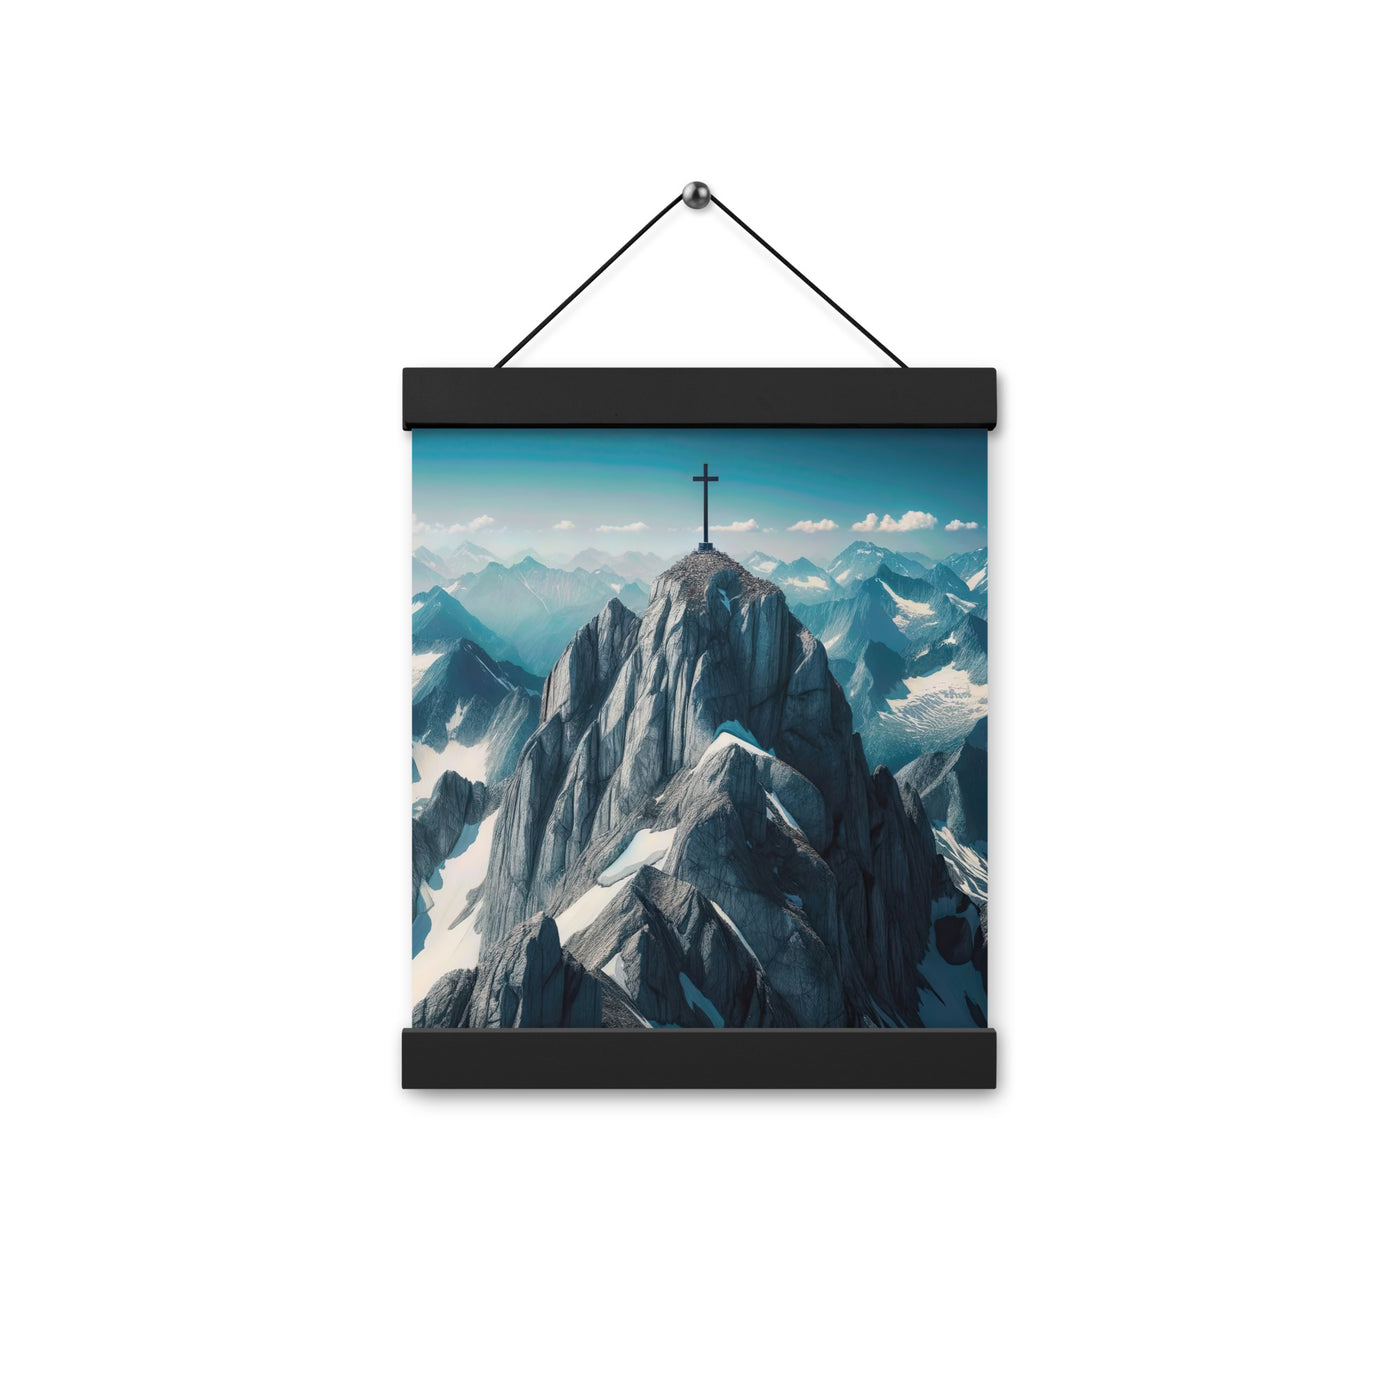 Foto der Alpen mit Gipfelkreuz an einem klaren Tag, schneebedeckte Spitzen vor blauem Himmel - Enhanced Matte Paper Poster With Hanger berge xxx yyy zzz 20.3 x 25.4 cm